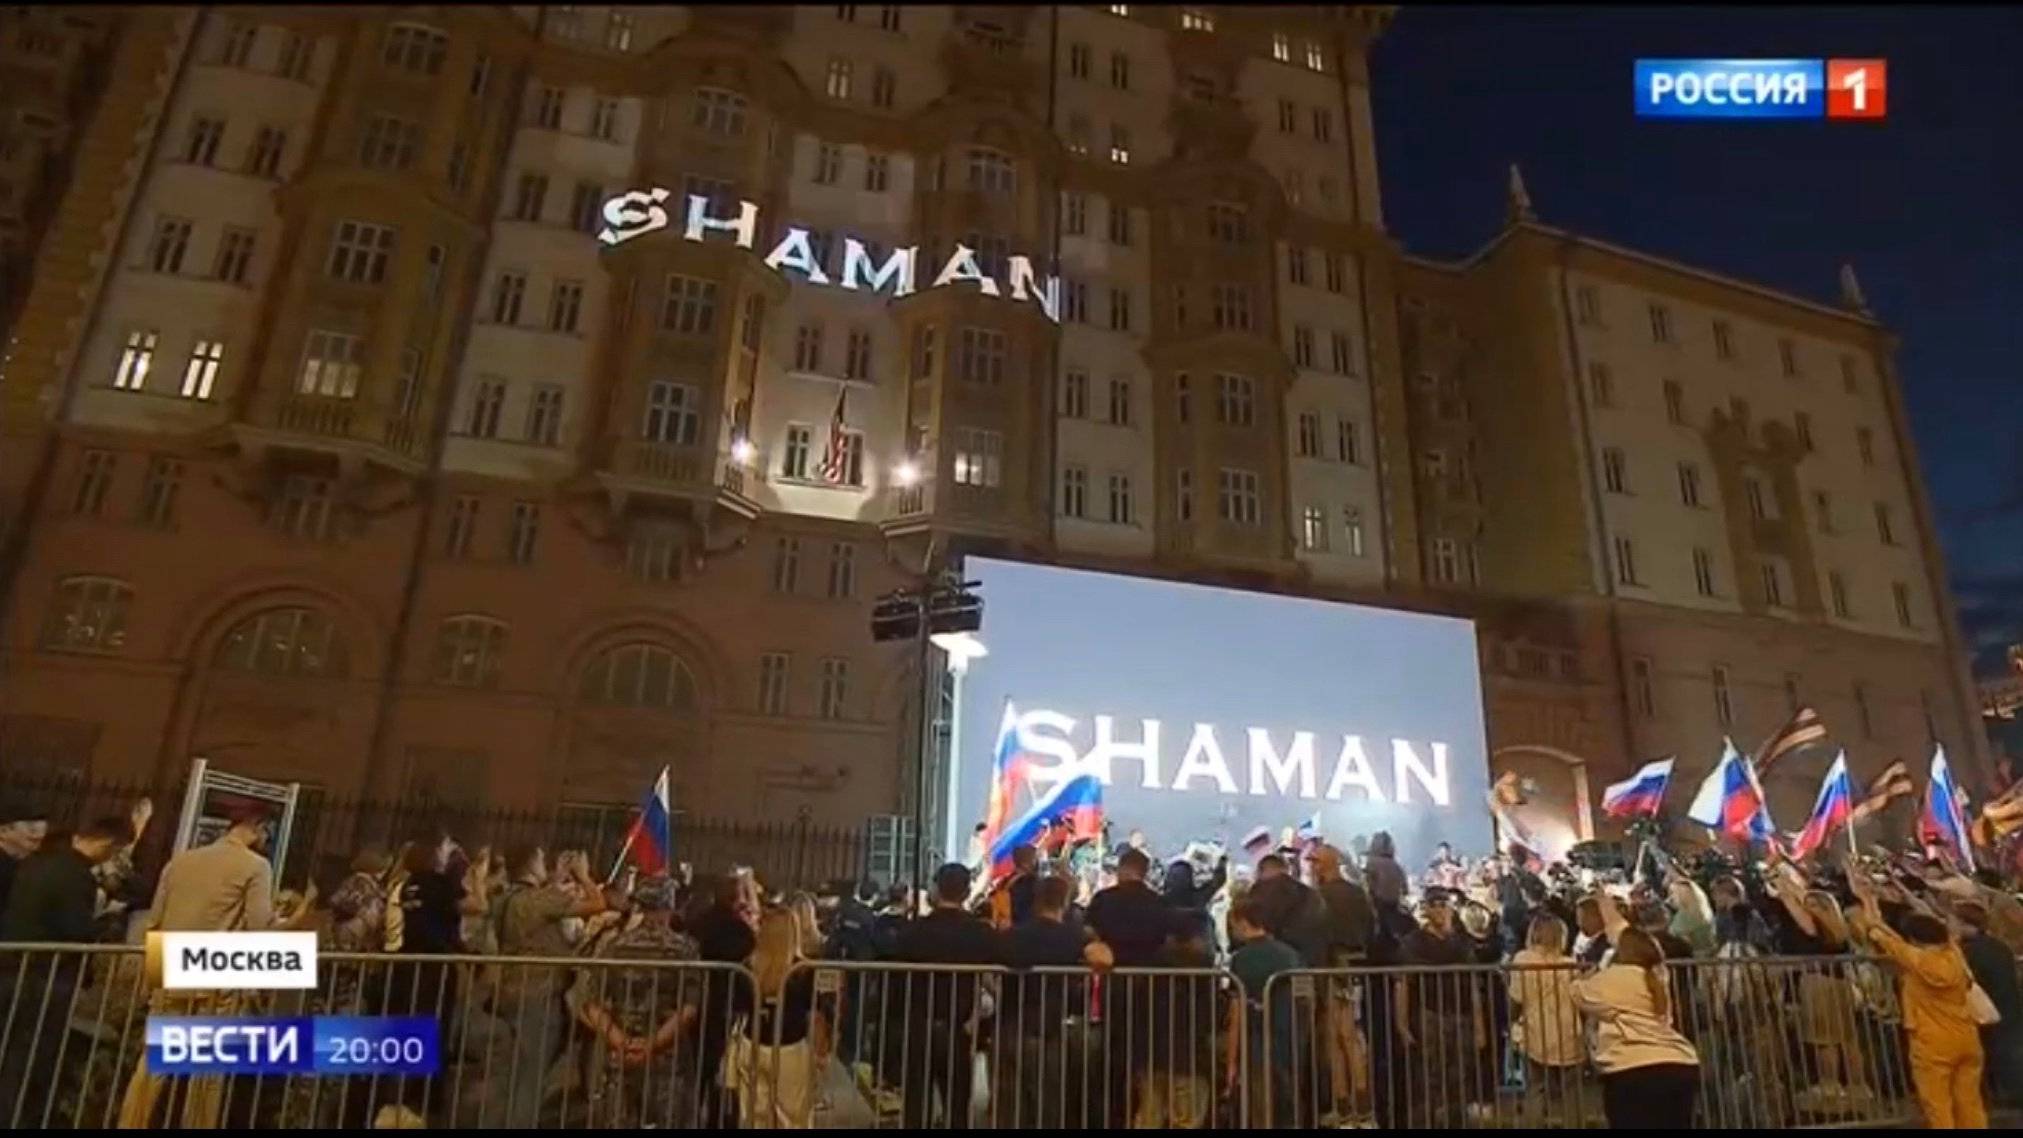 Ludzie z rosyjskimi flagami pod budynkiem z amerykańską flagą